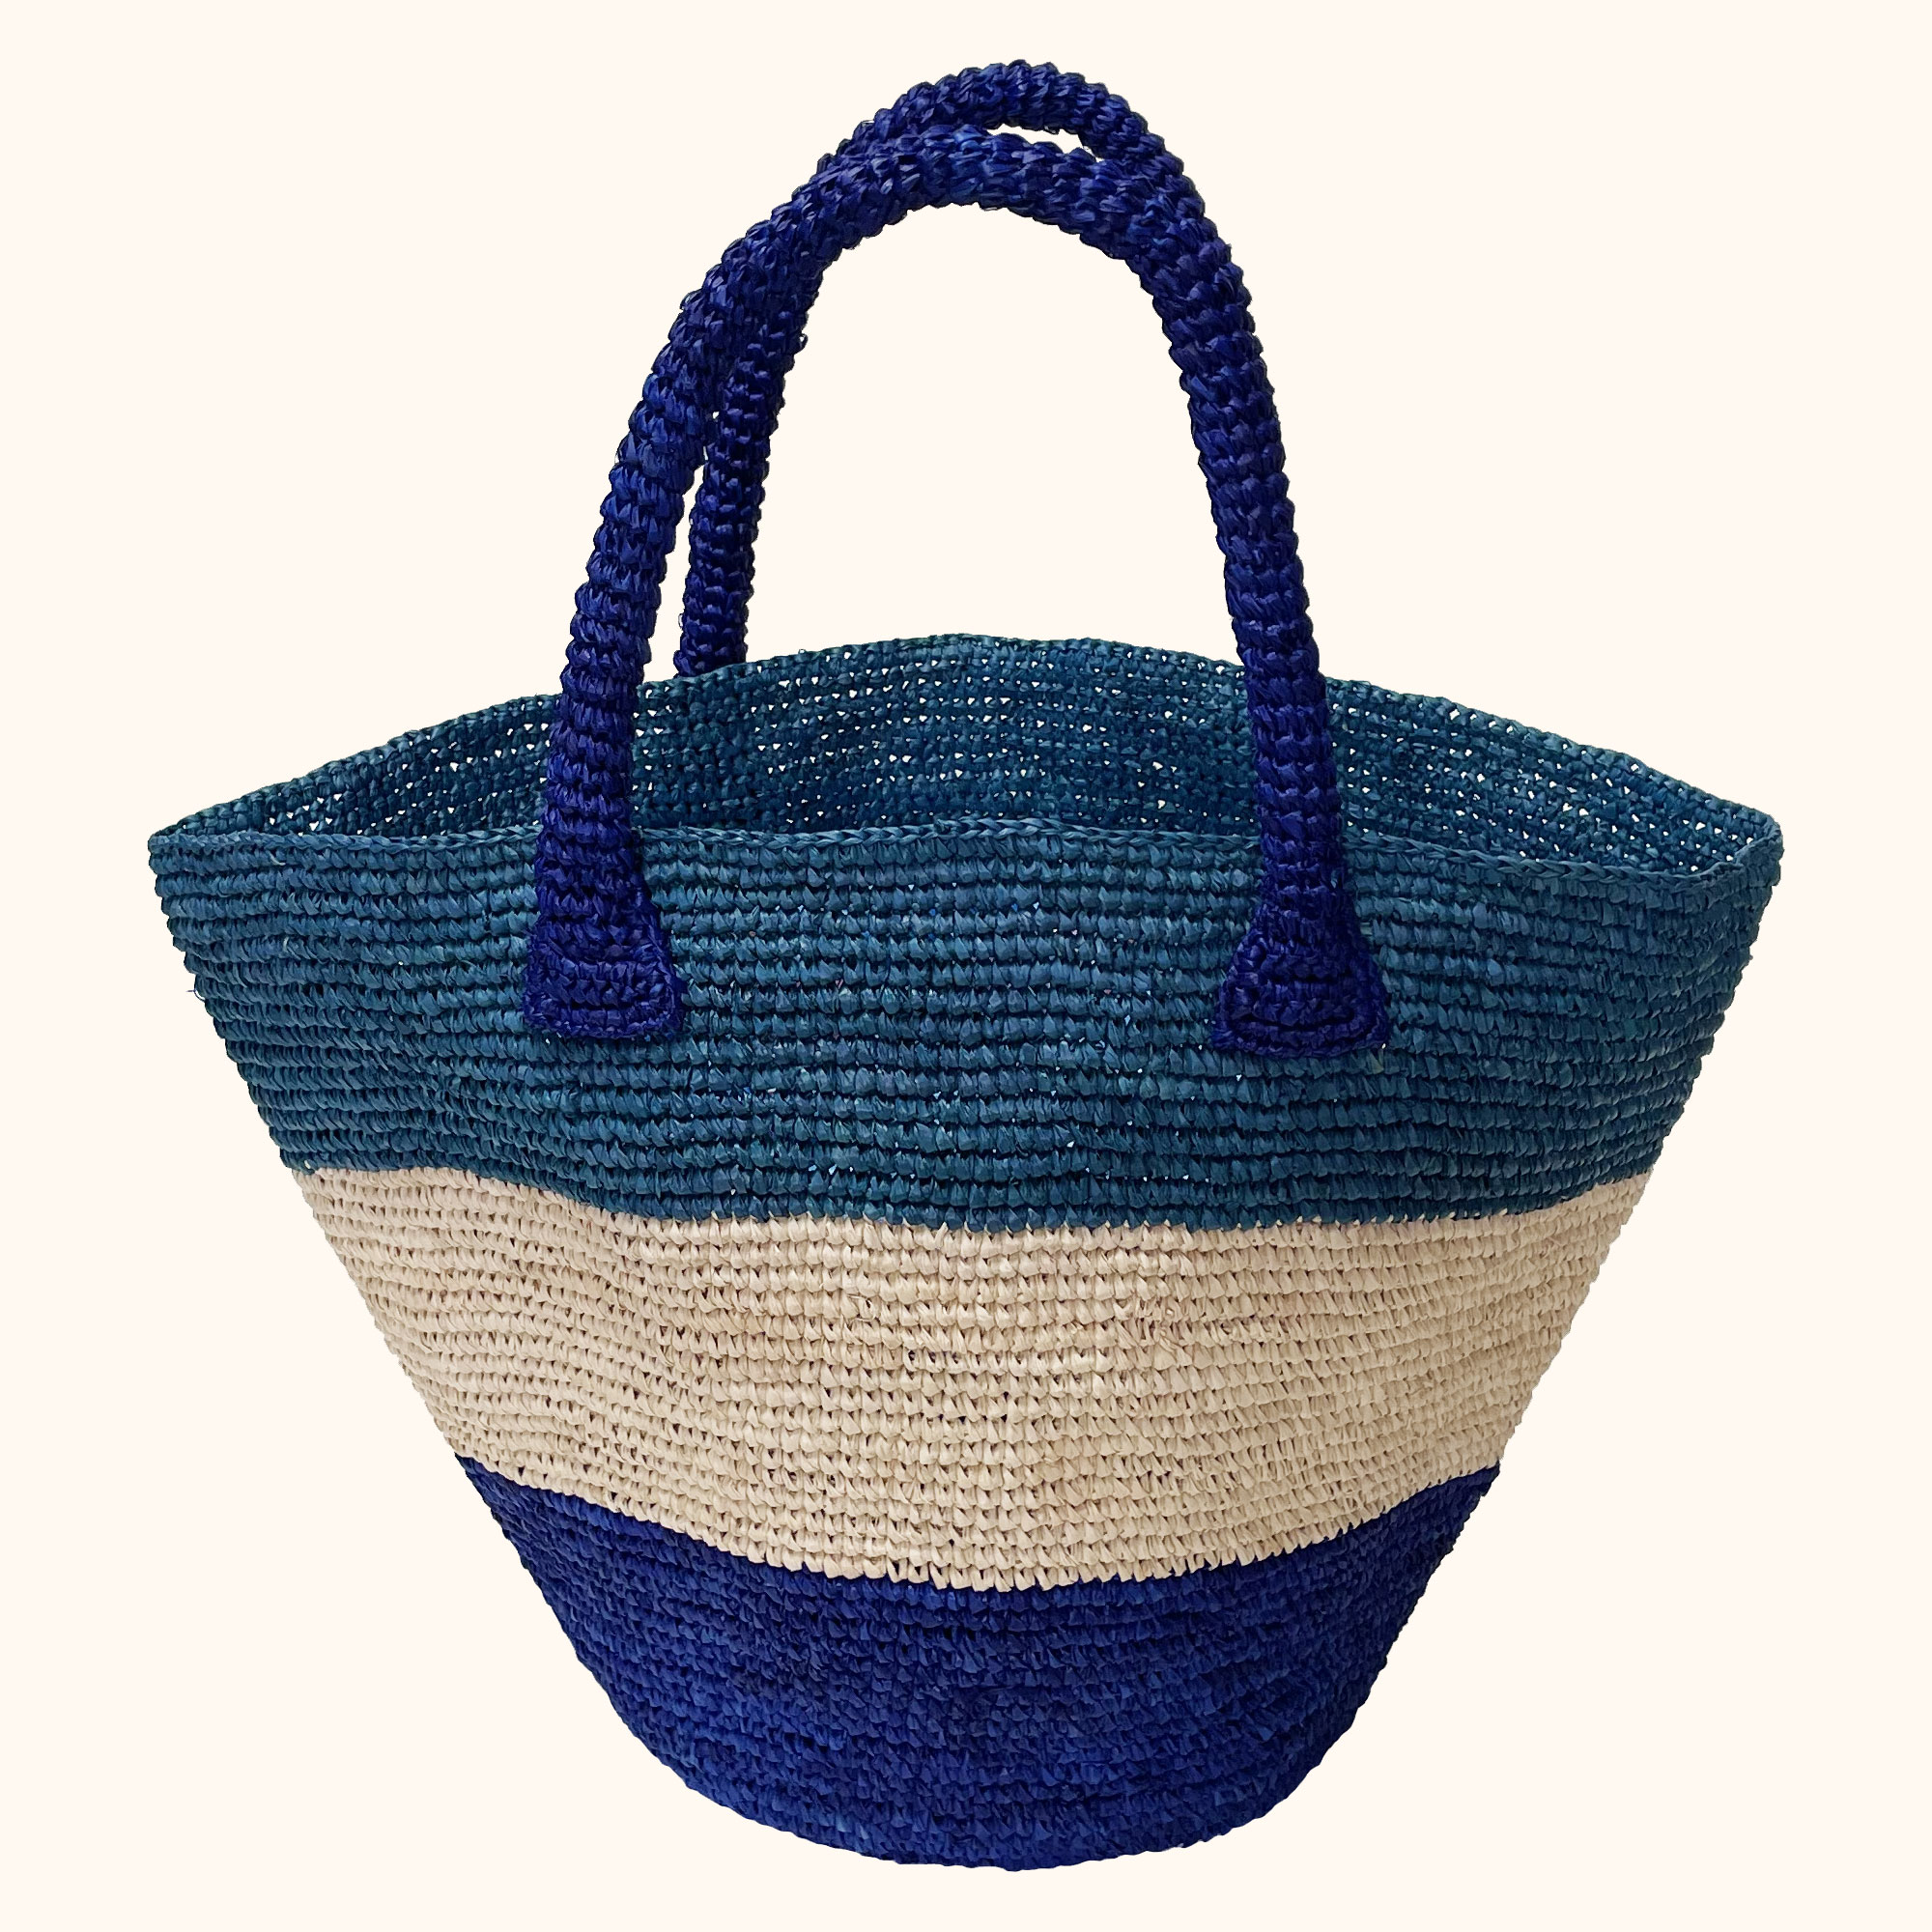 Crochet Bucket Bag - BasketBasket